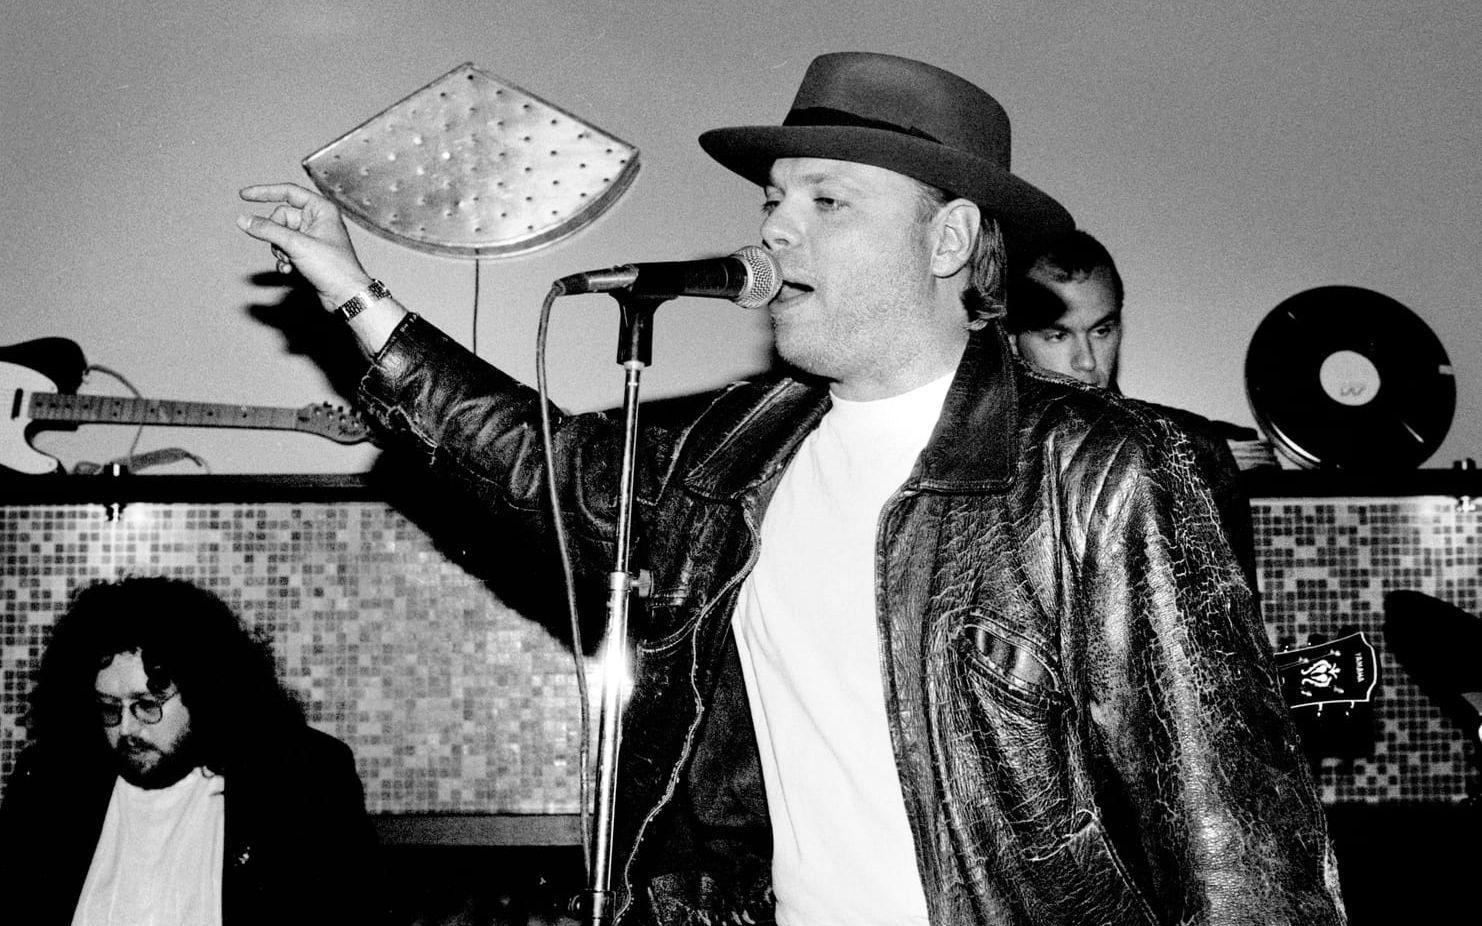 1991 Stockholm. Peter LeMarc - releaseparty I Stockholm i samband med att albumet "Sången dom spelar när filmen är slut" släpptes.